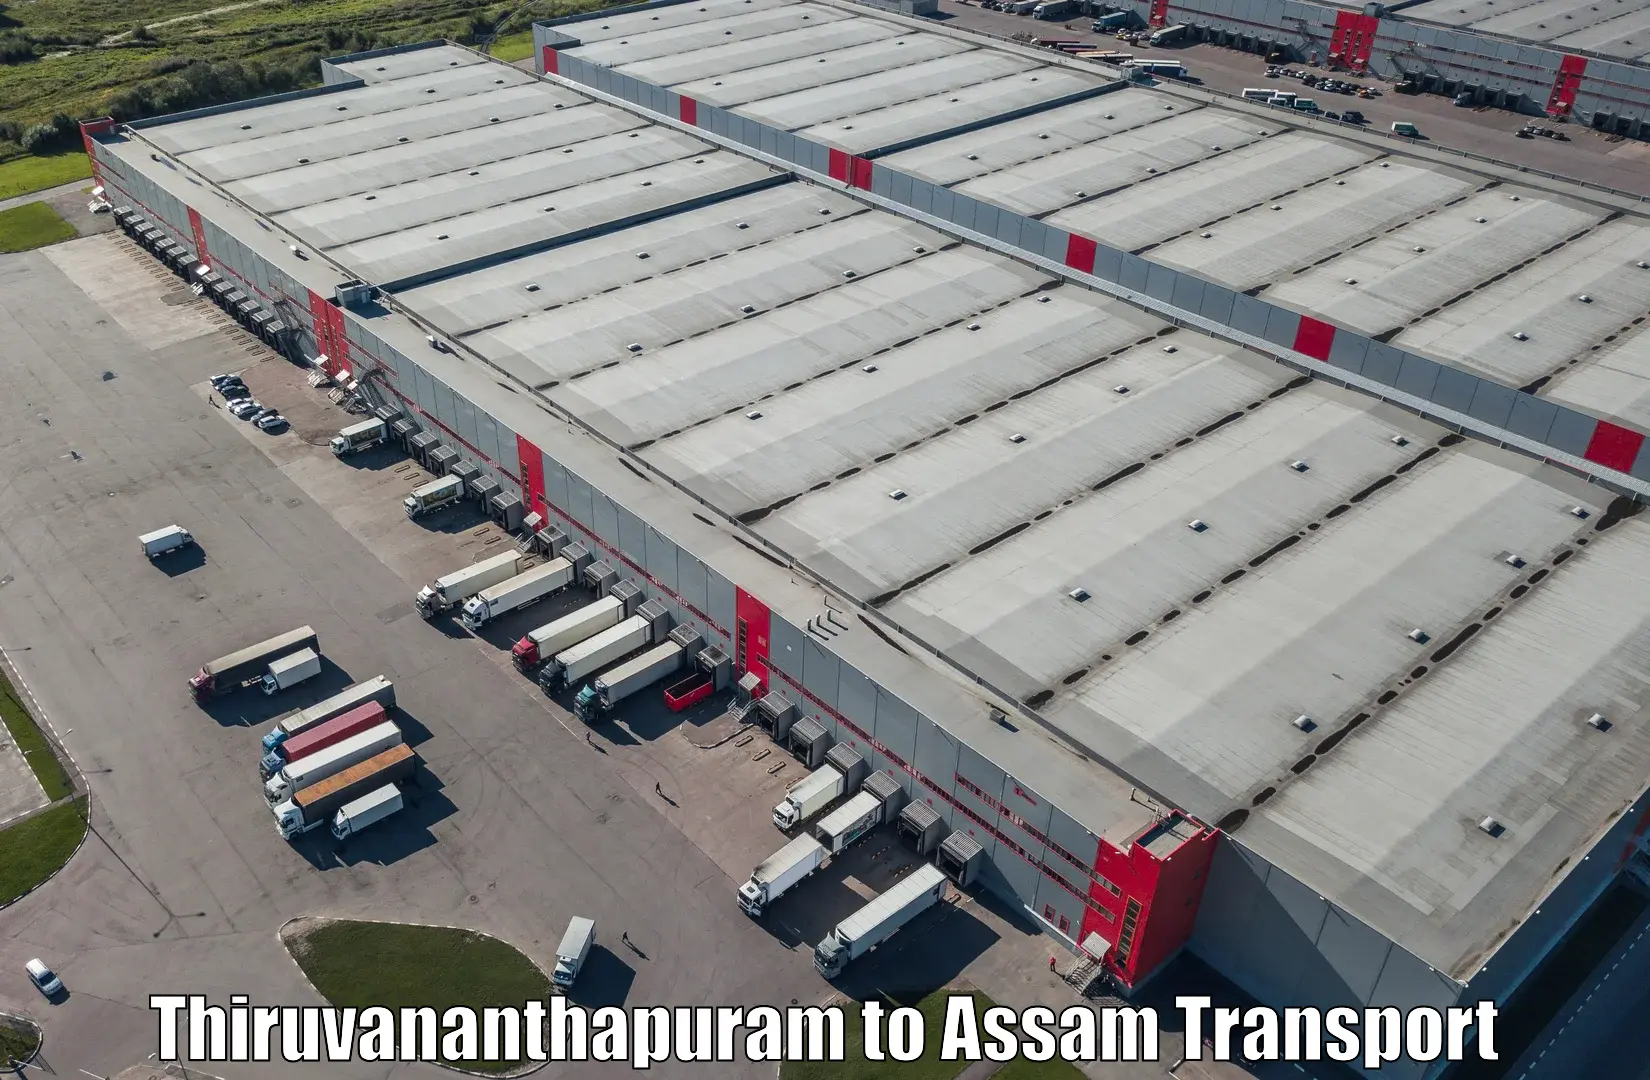 Road transport online services in Thiruvananthapuram to Assam